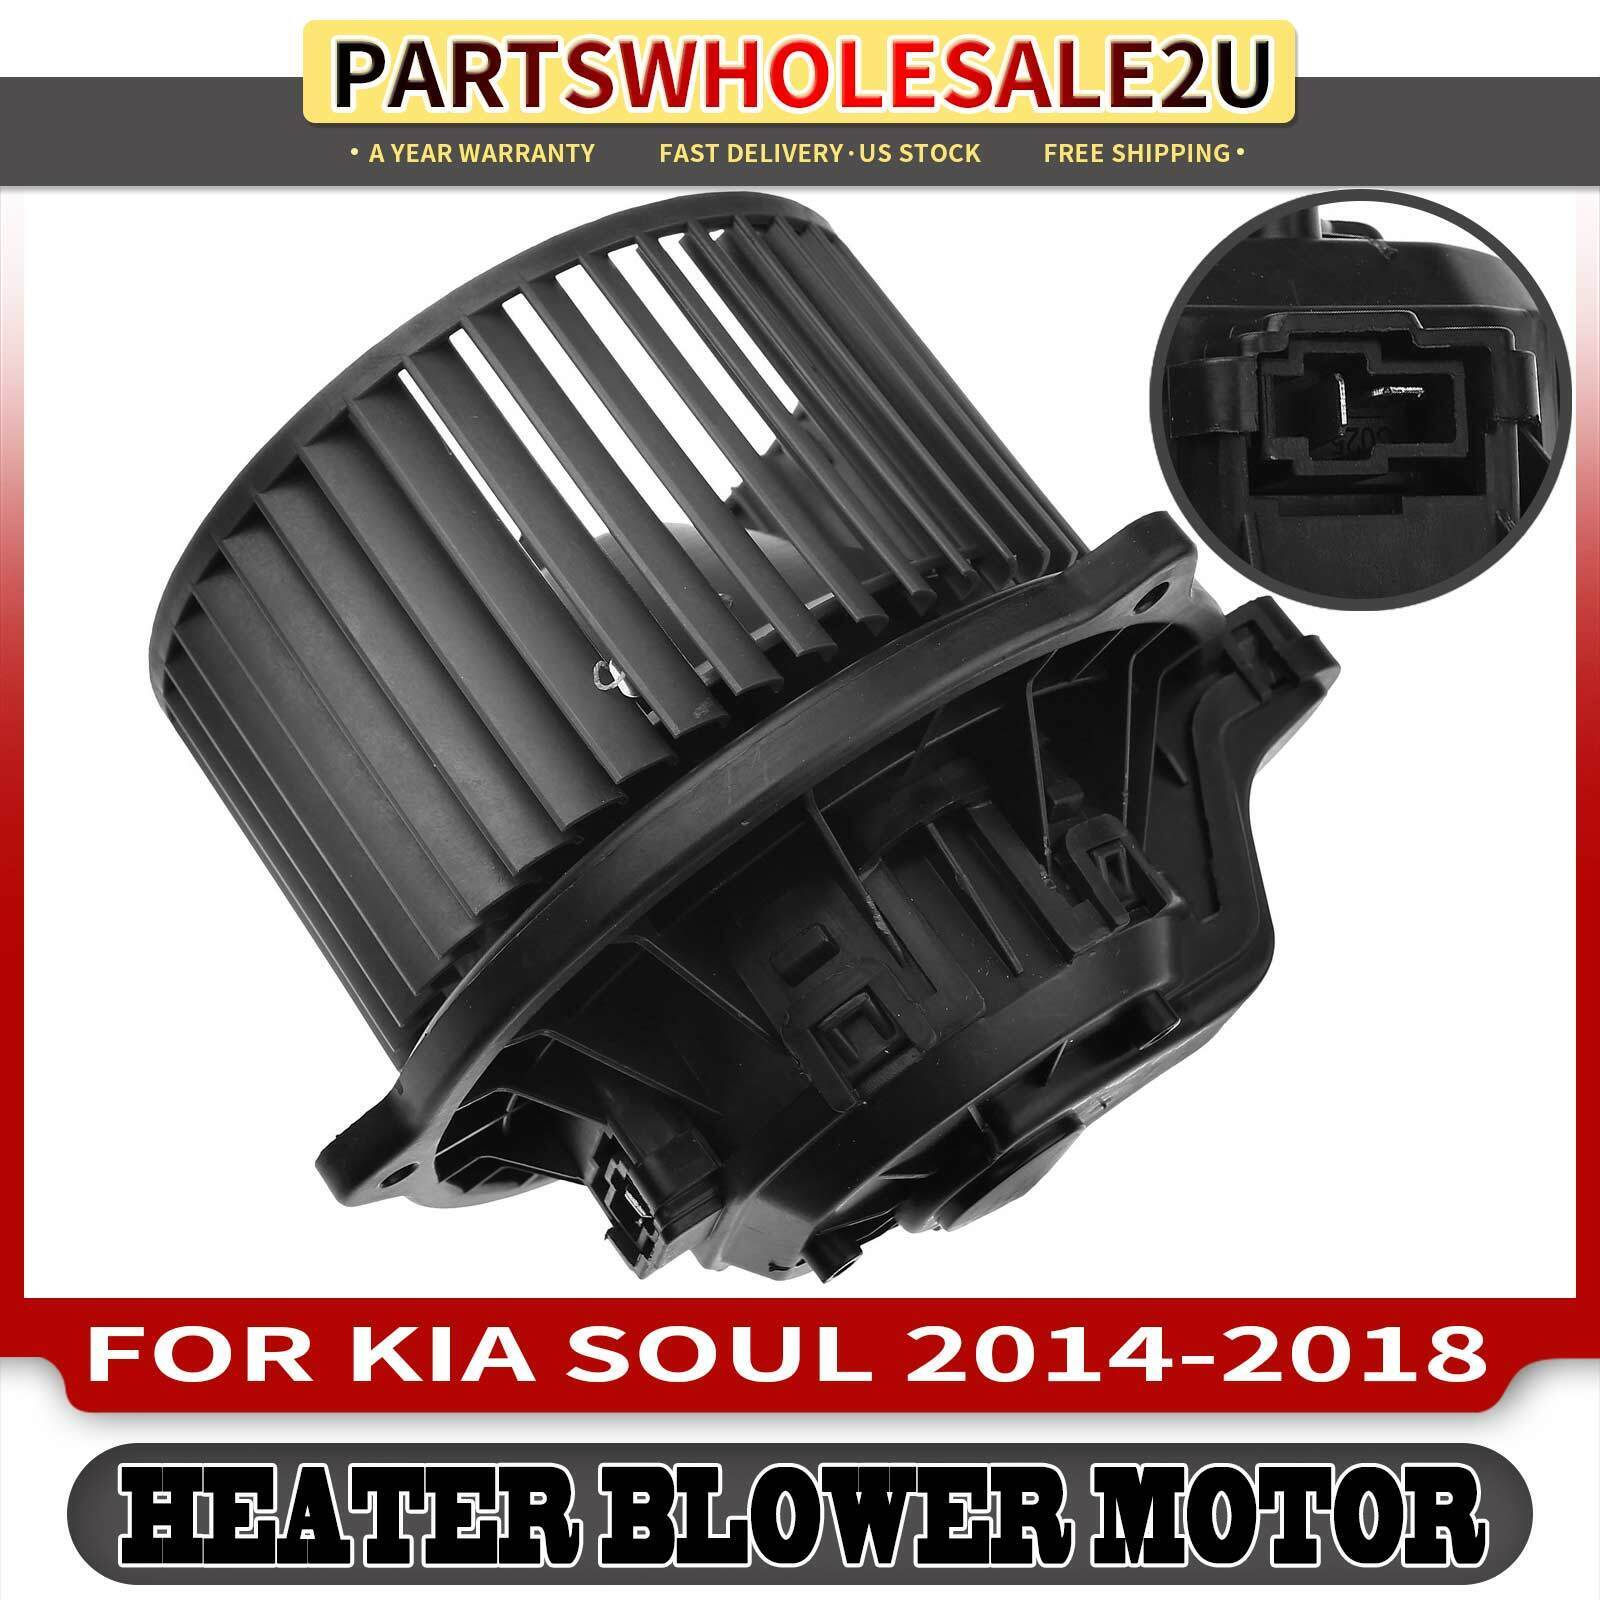 Ubicación del resistor del motor del soplador en Kia Soul 2016: Guía completa